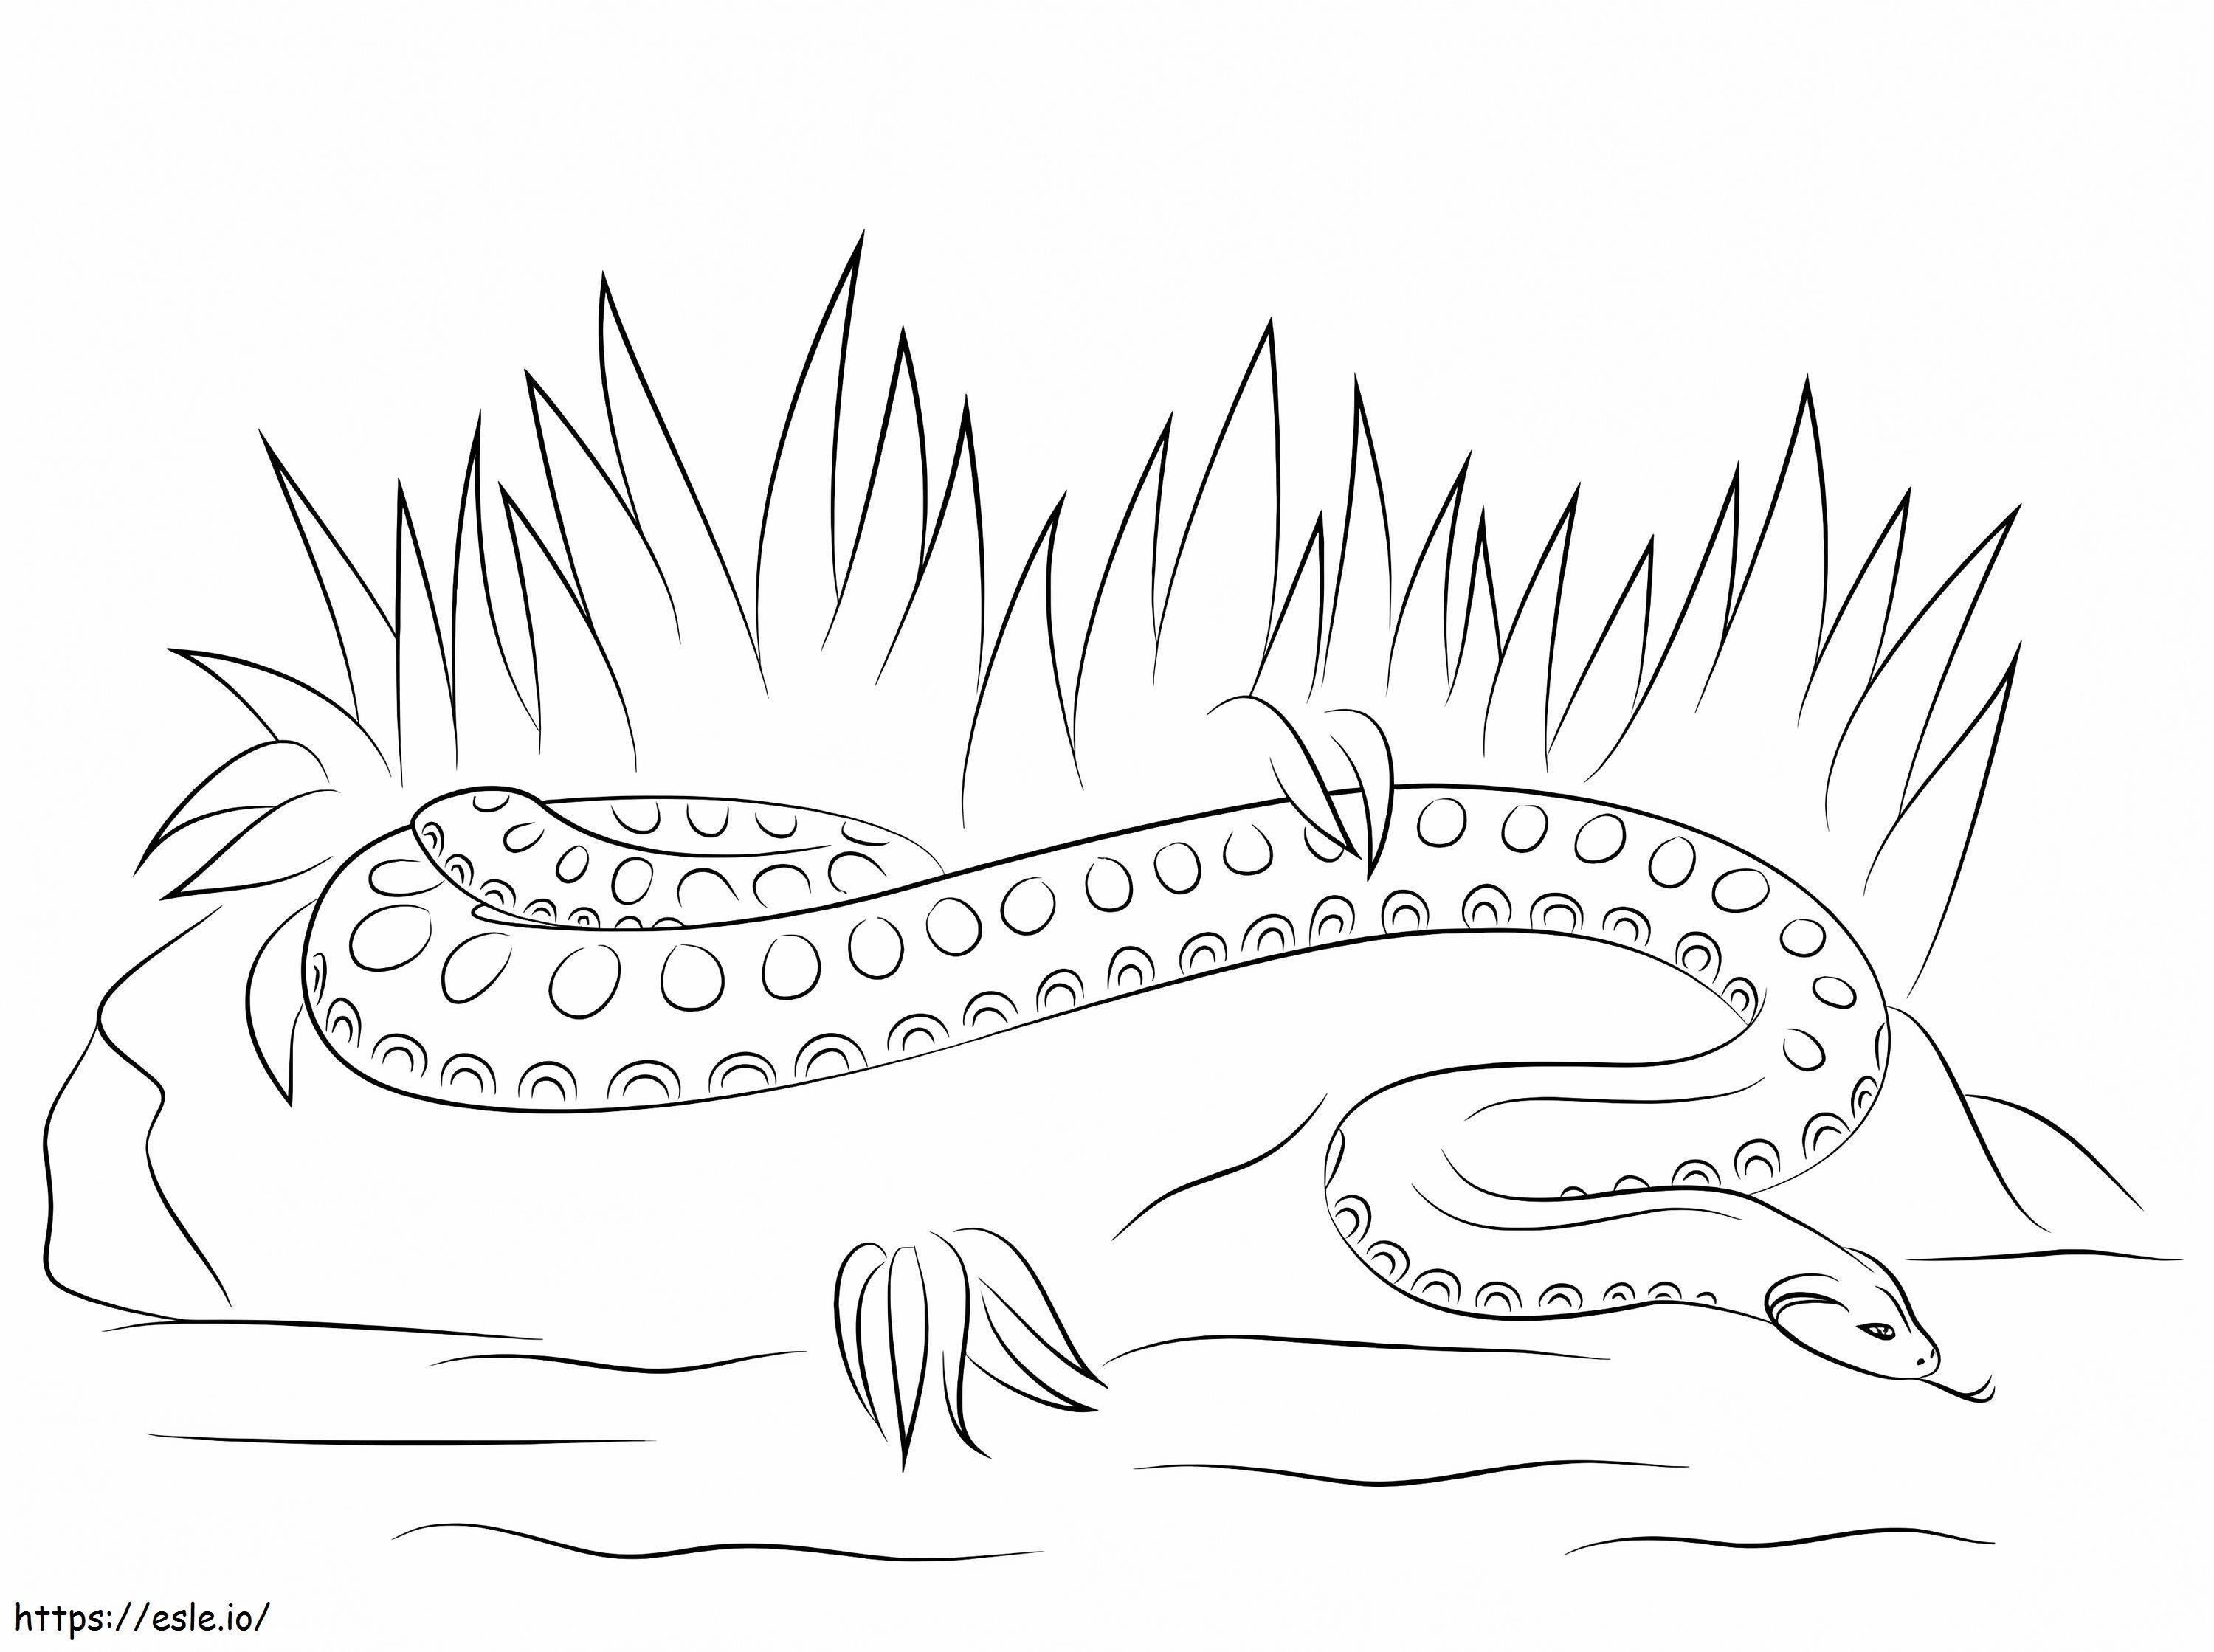 Anaconda sencilla para colorear